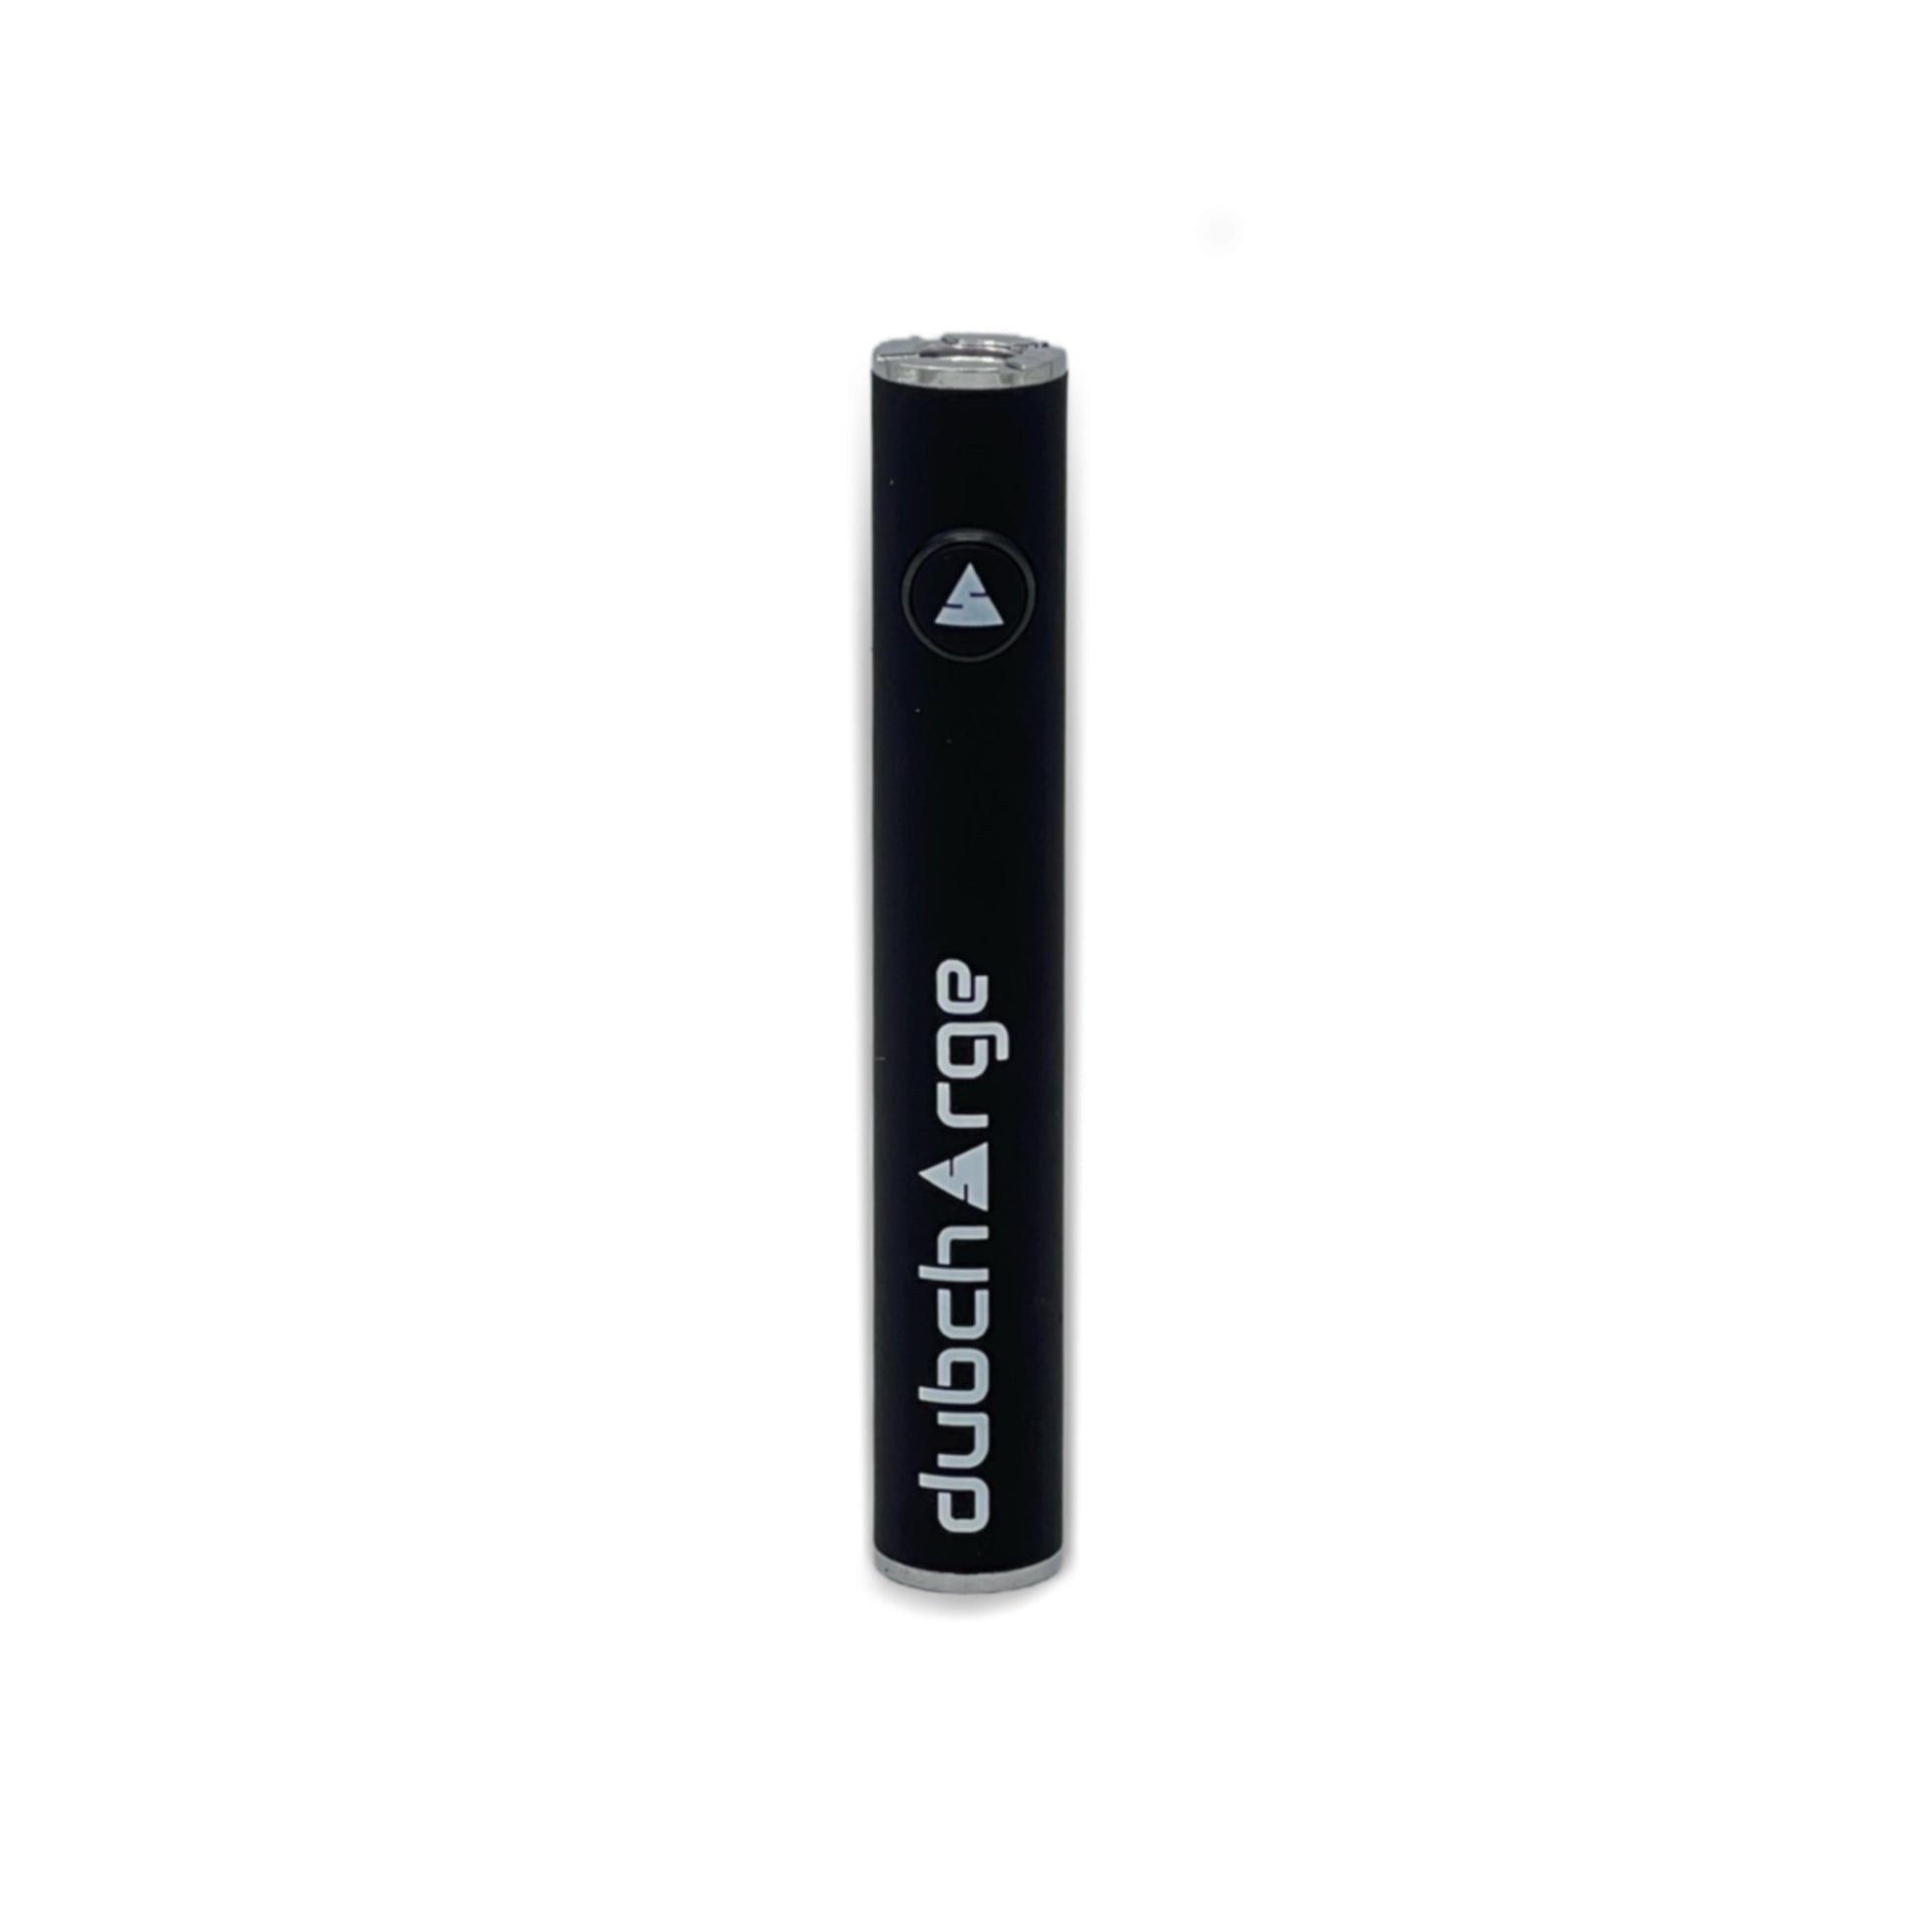 battery for vape pen